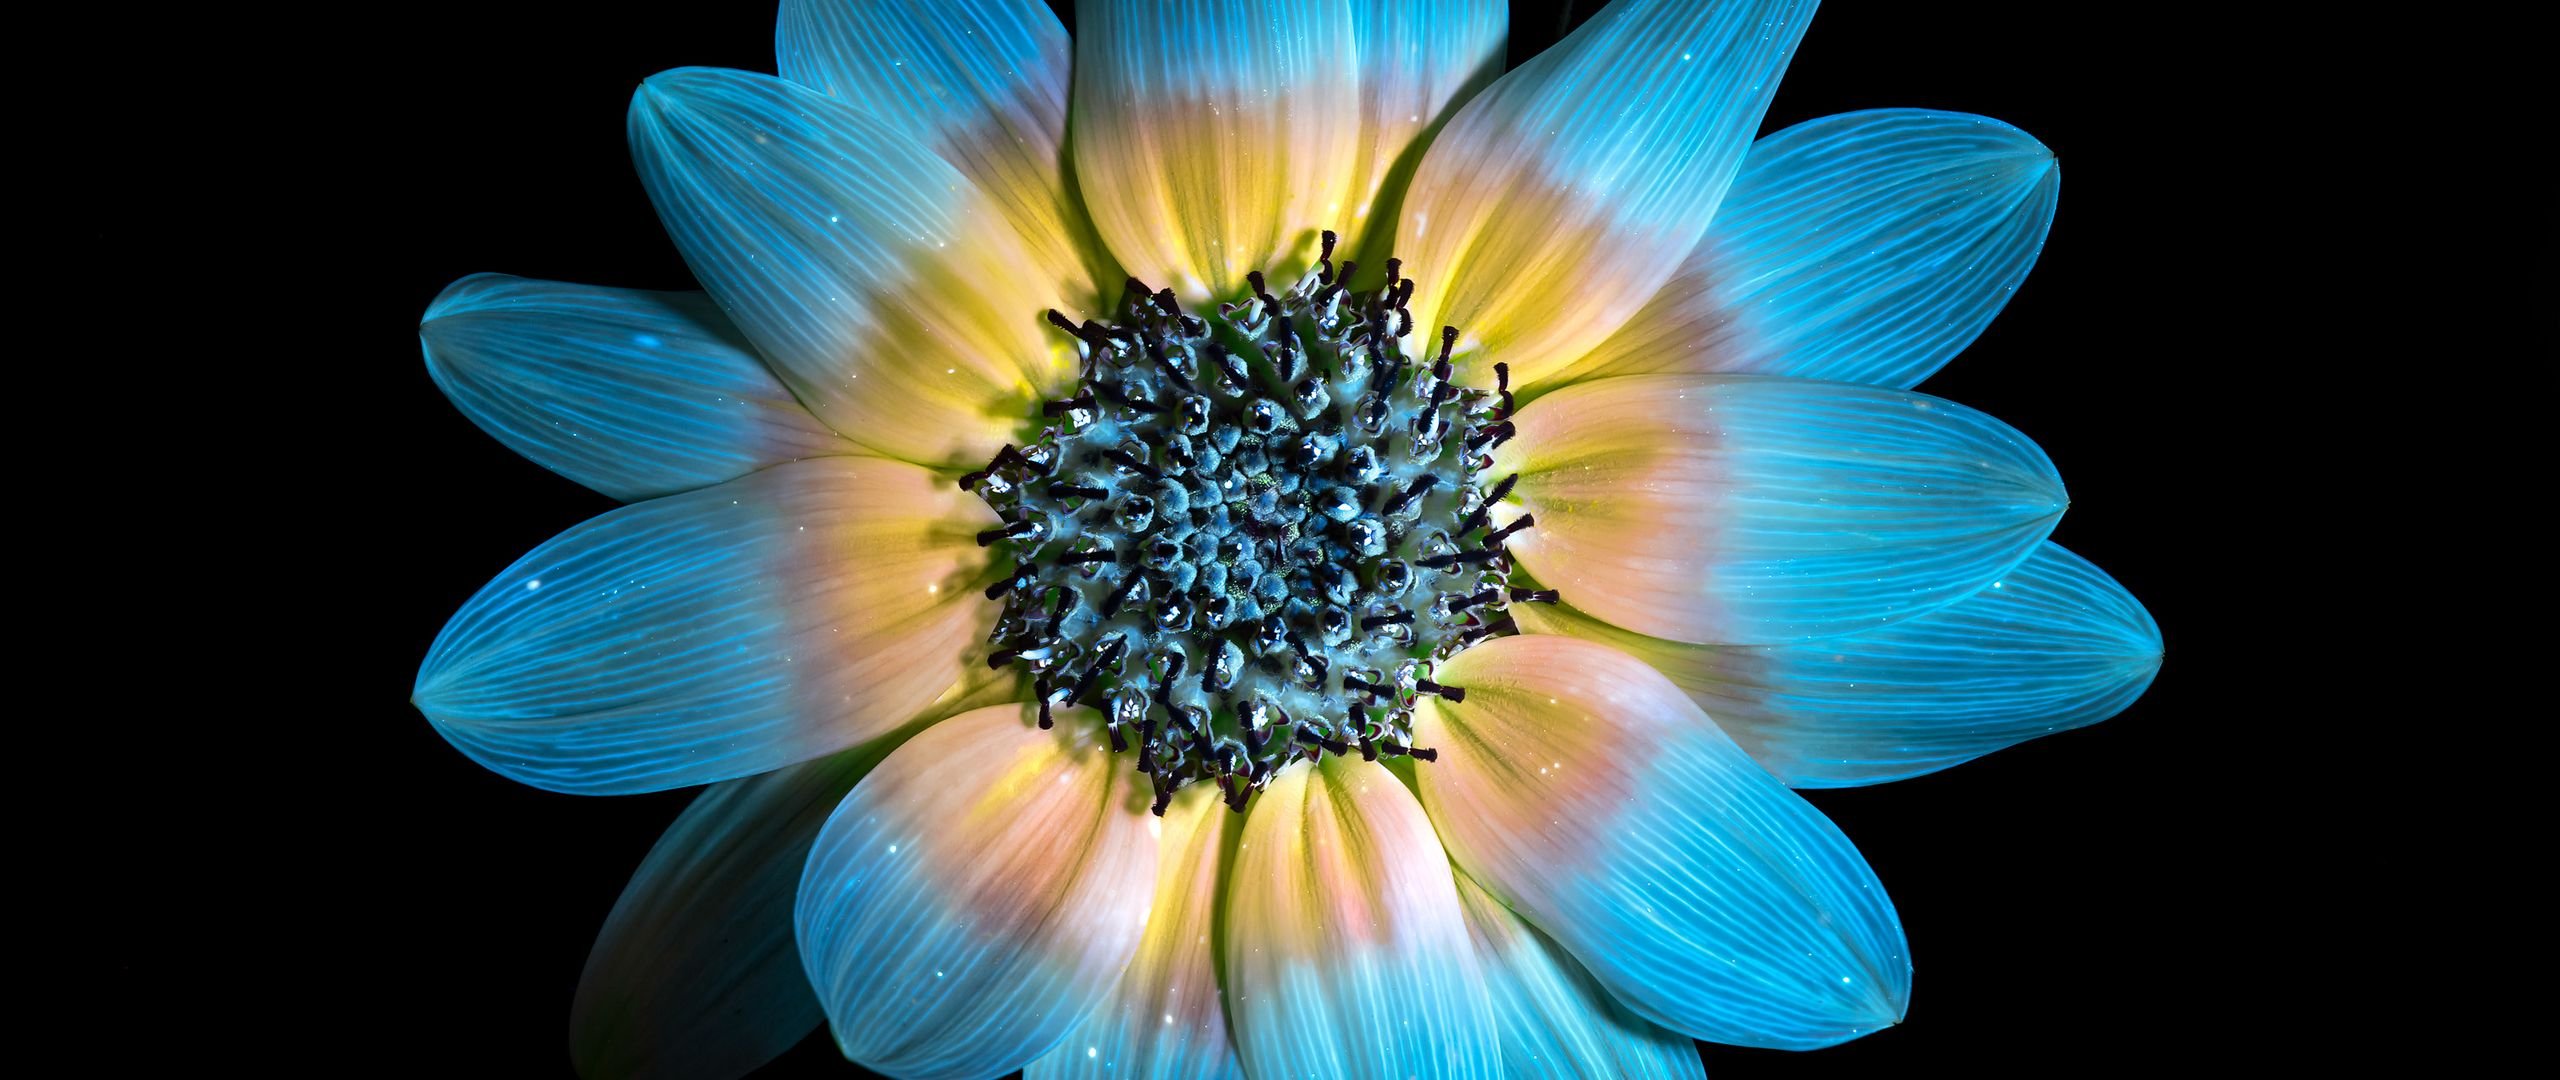 Wallpaper Blue sunflower petals